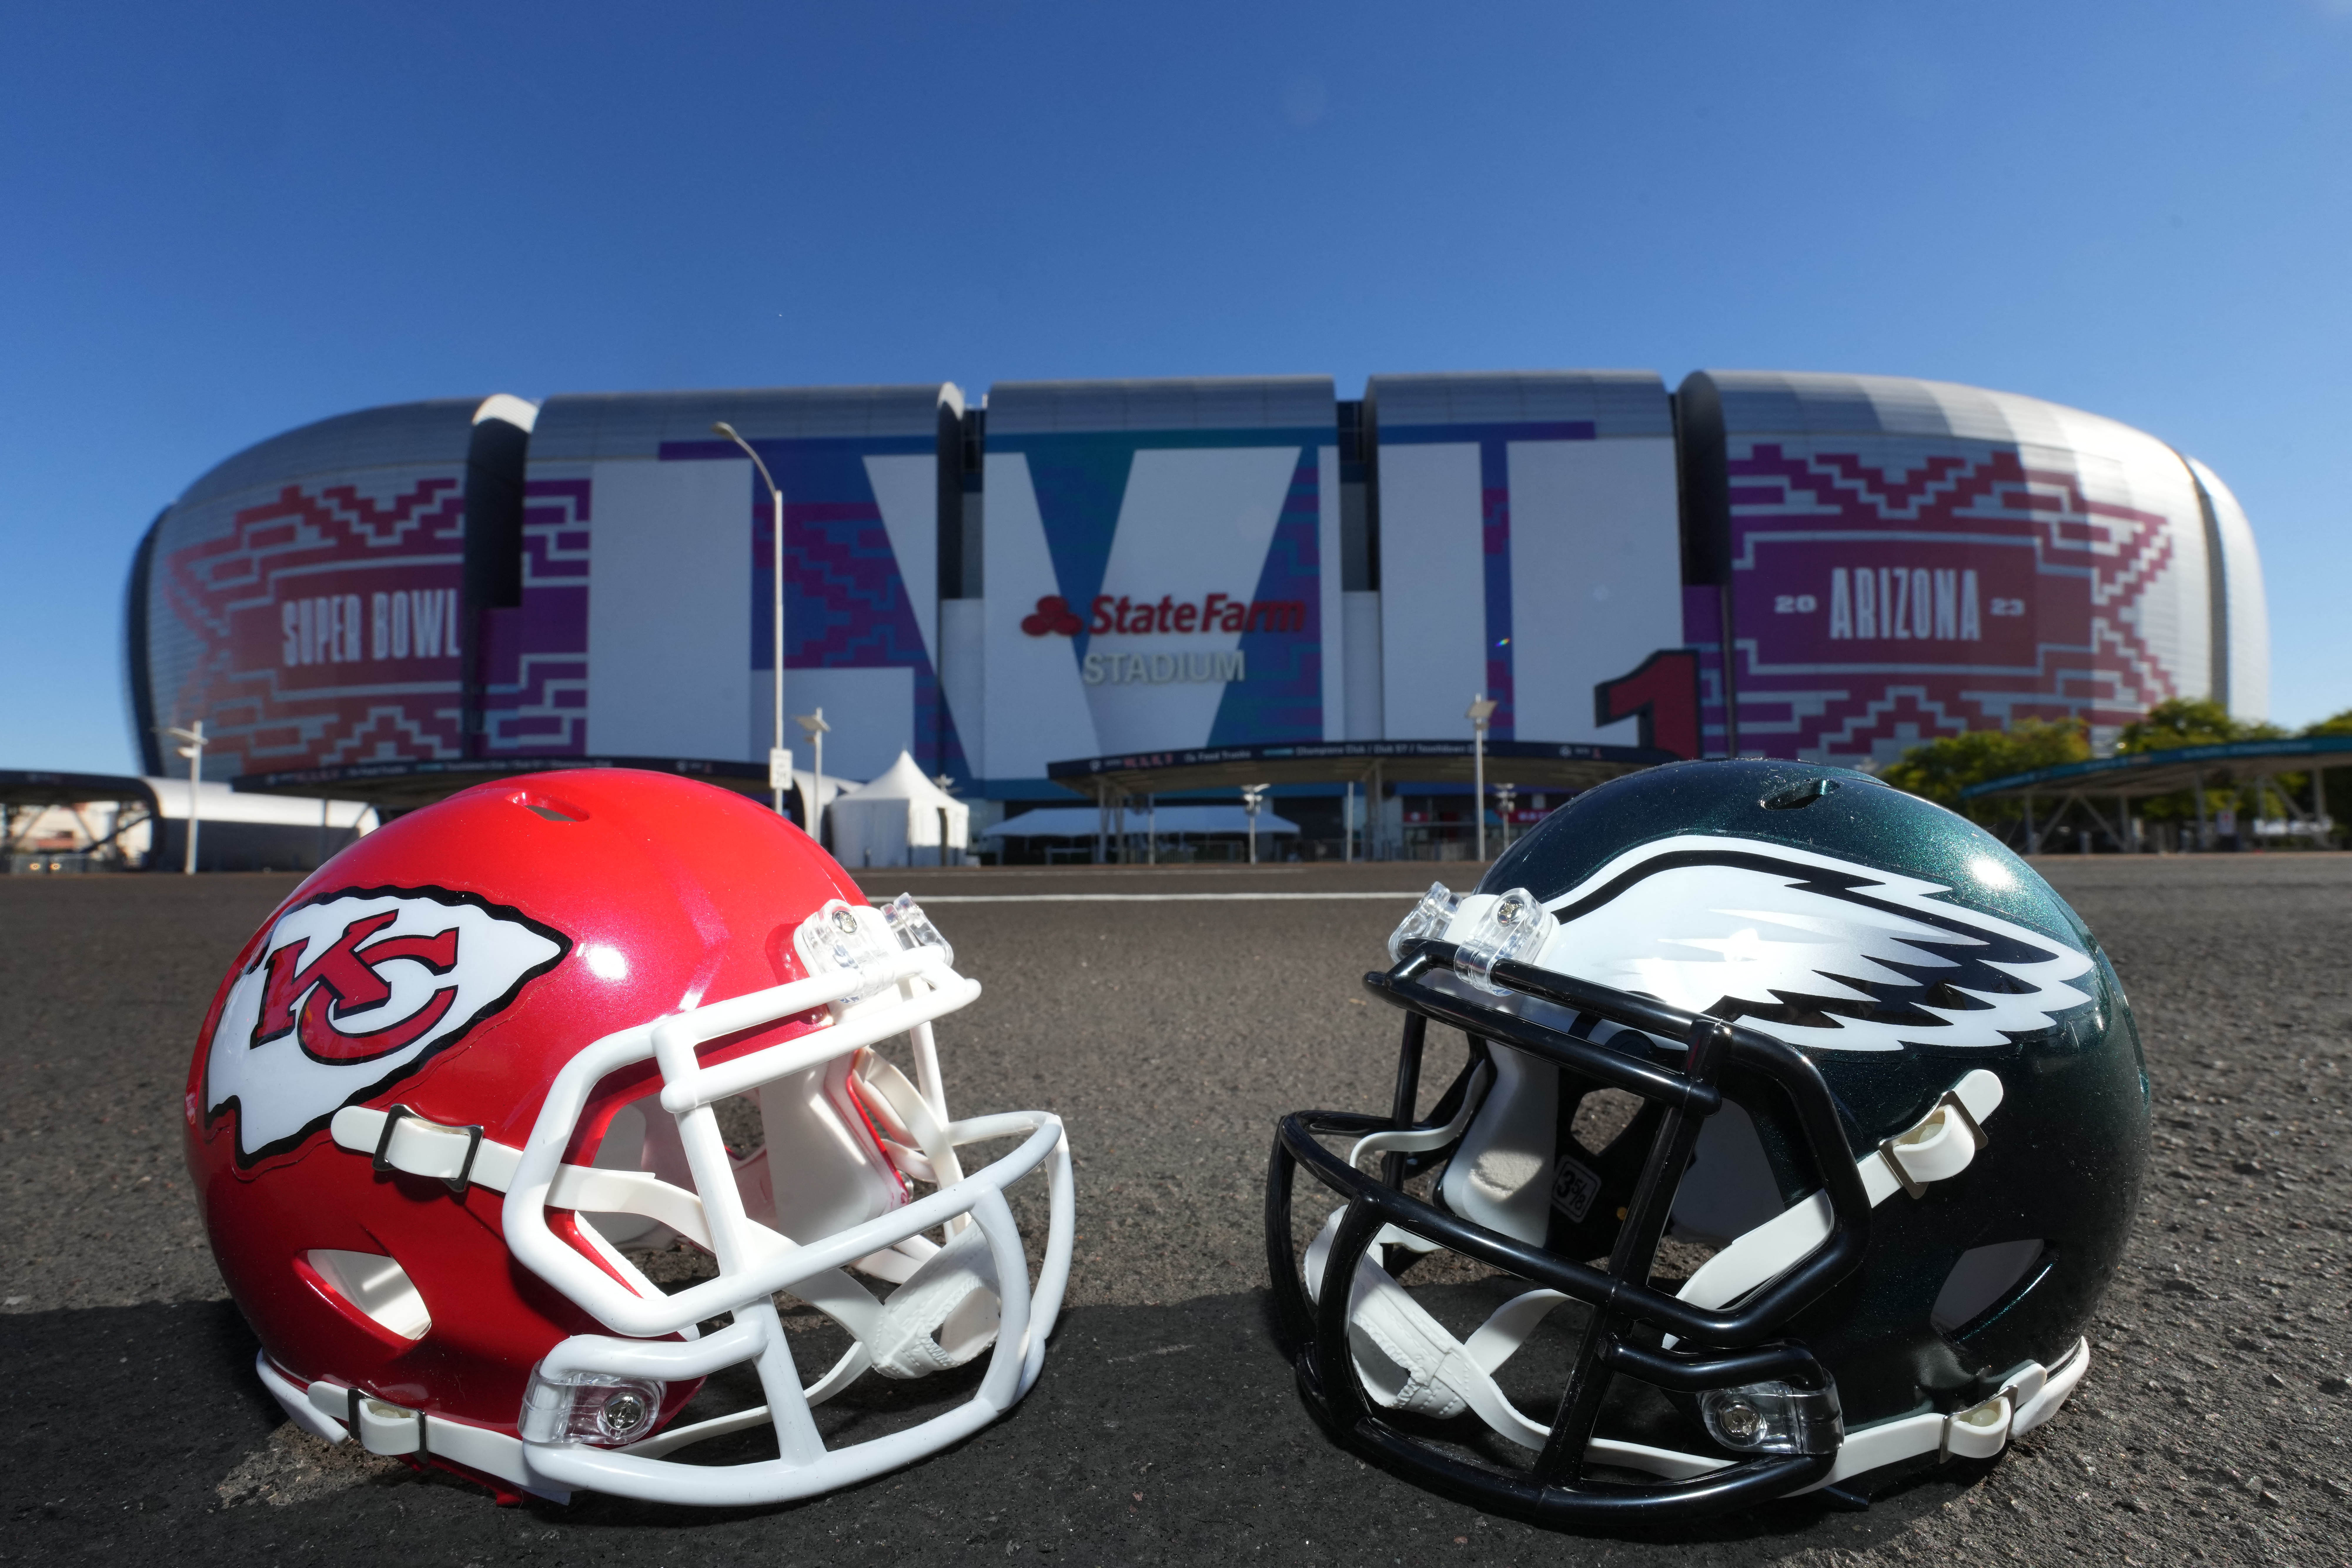 Chiefs vs Eagles; Horario, canal, TV, cómo y dónde ver desde México el  Super Bowl LVII - AS México